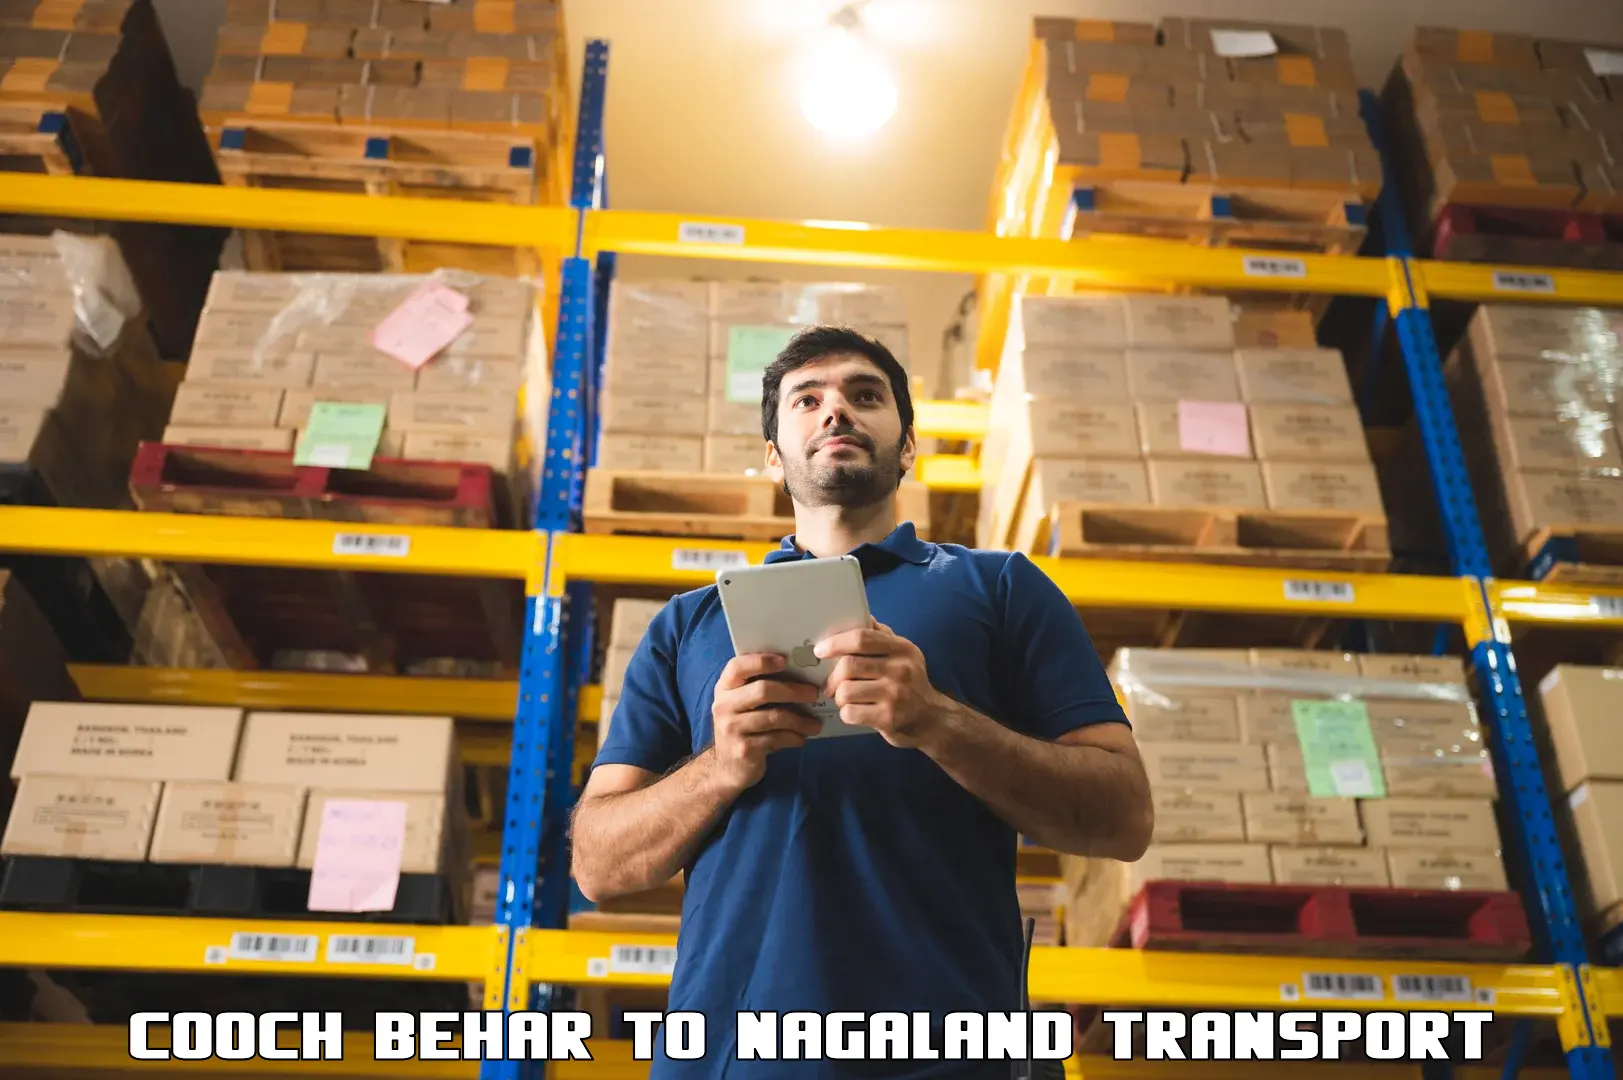 Furniture transport service Cooch Behar to Nagaland